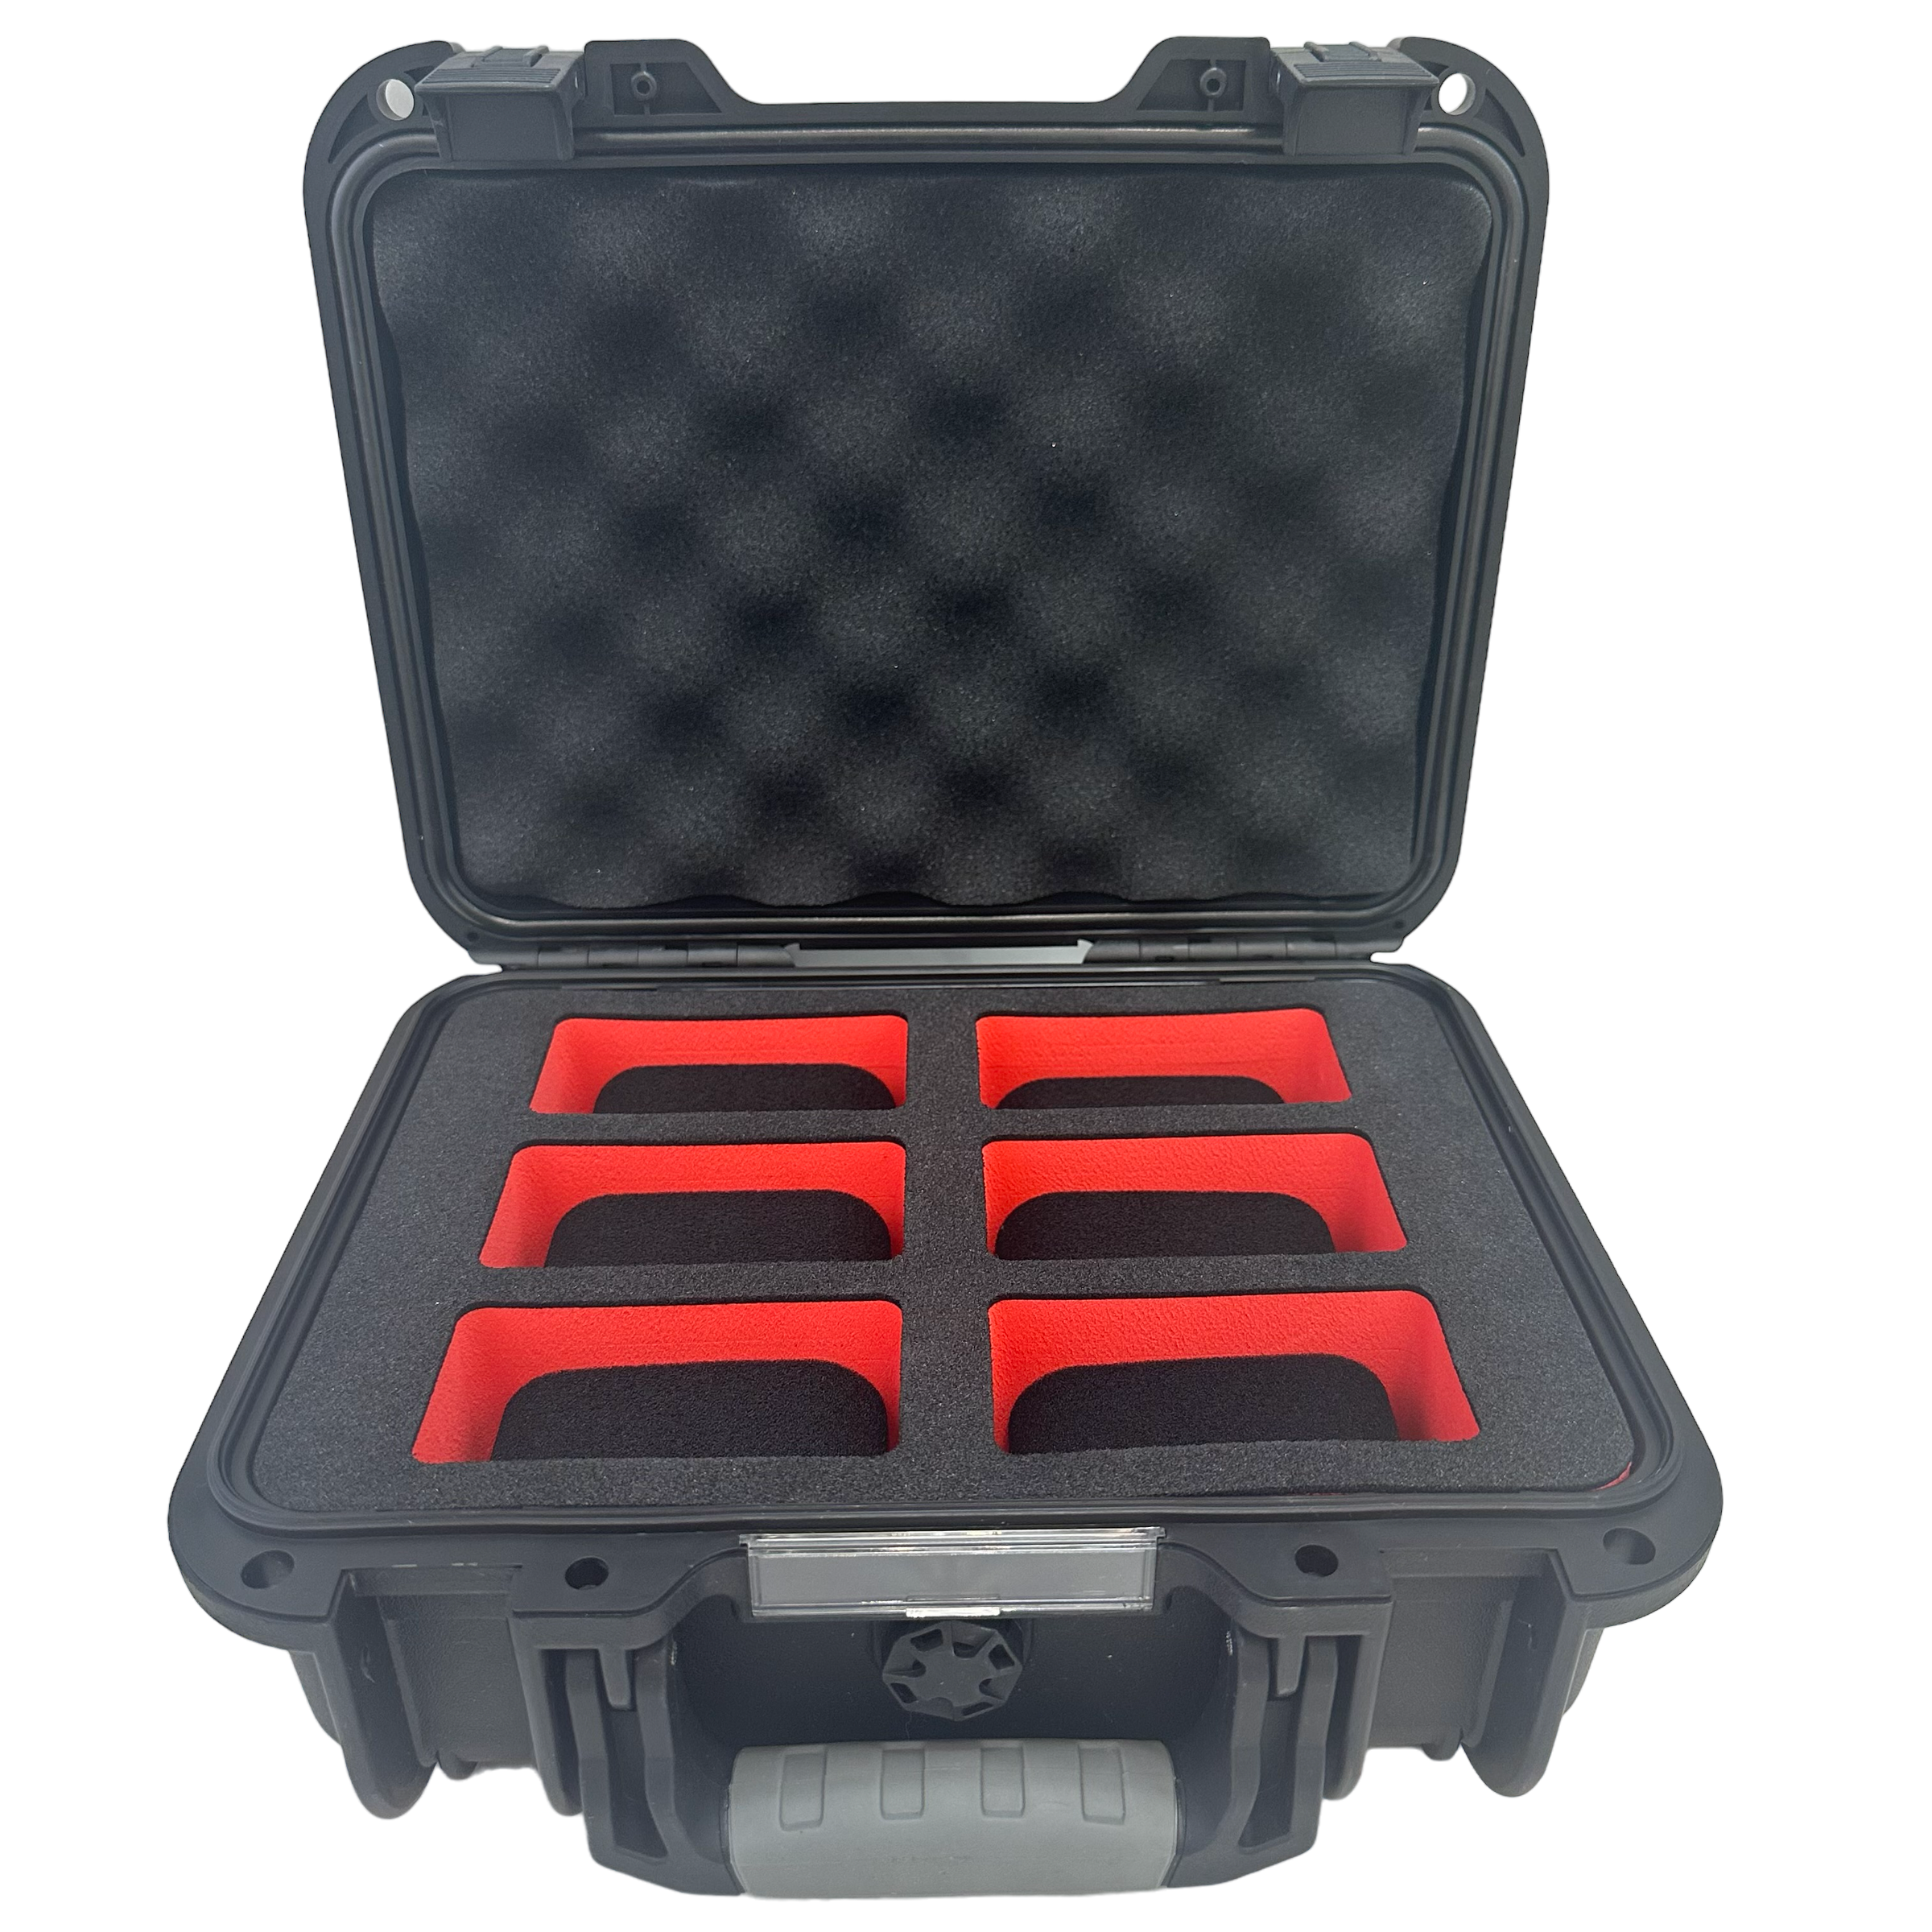 Watch Box Case Plastic Waterproof 6 Slot